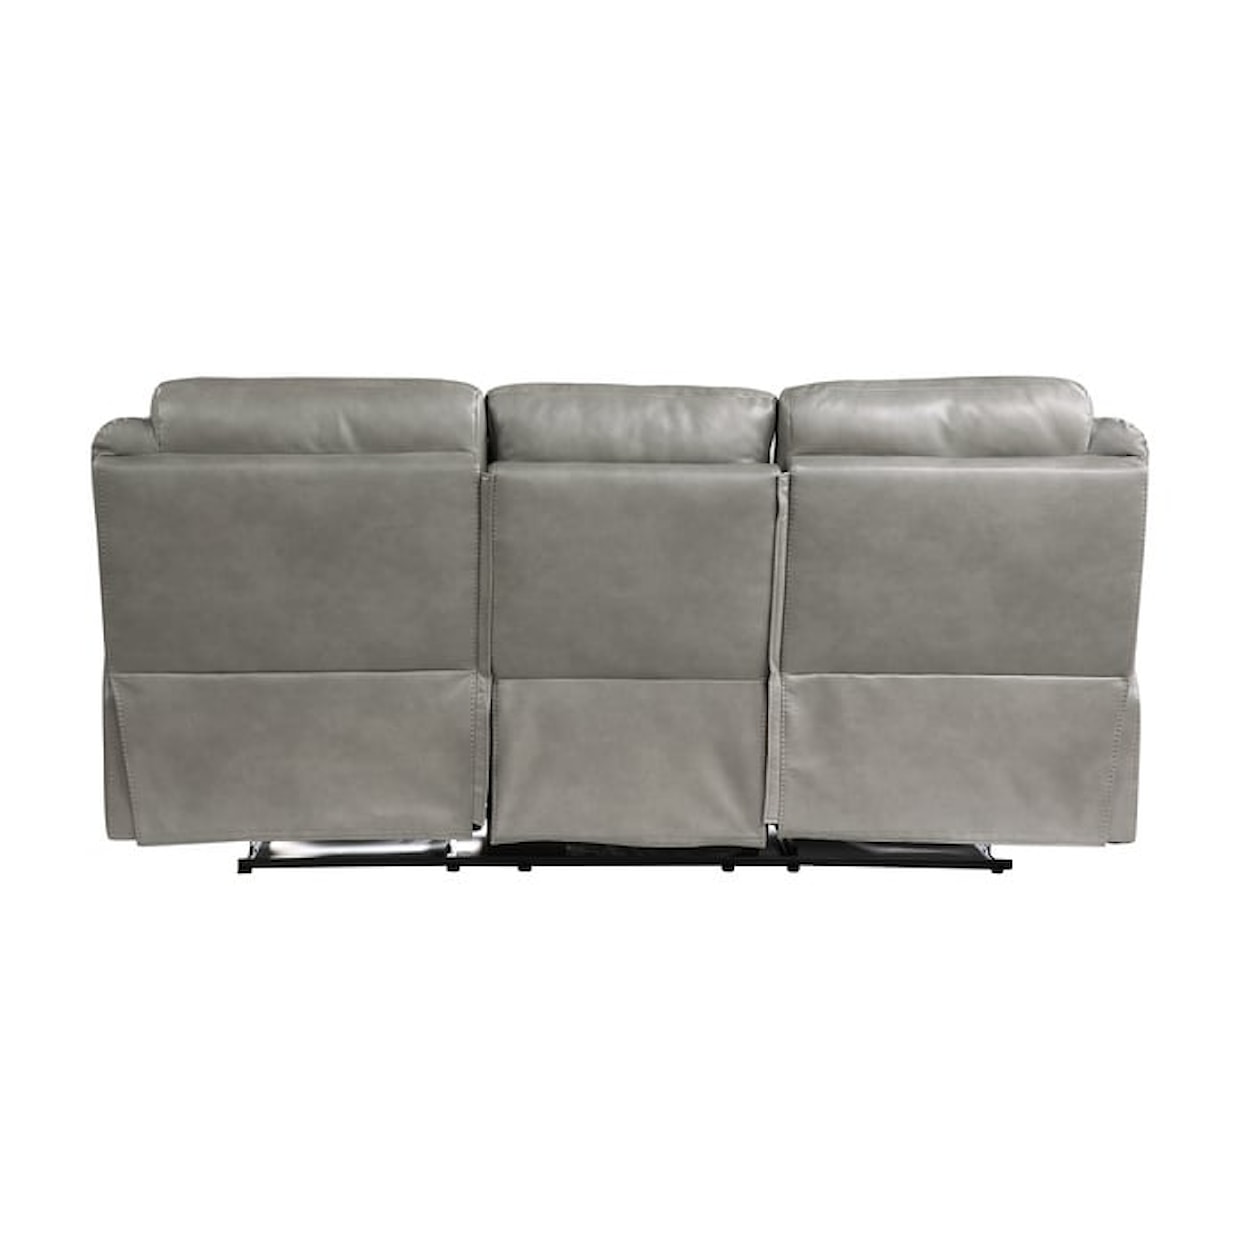 Homelegance Aram Dual Reclining Sofa